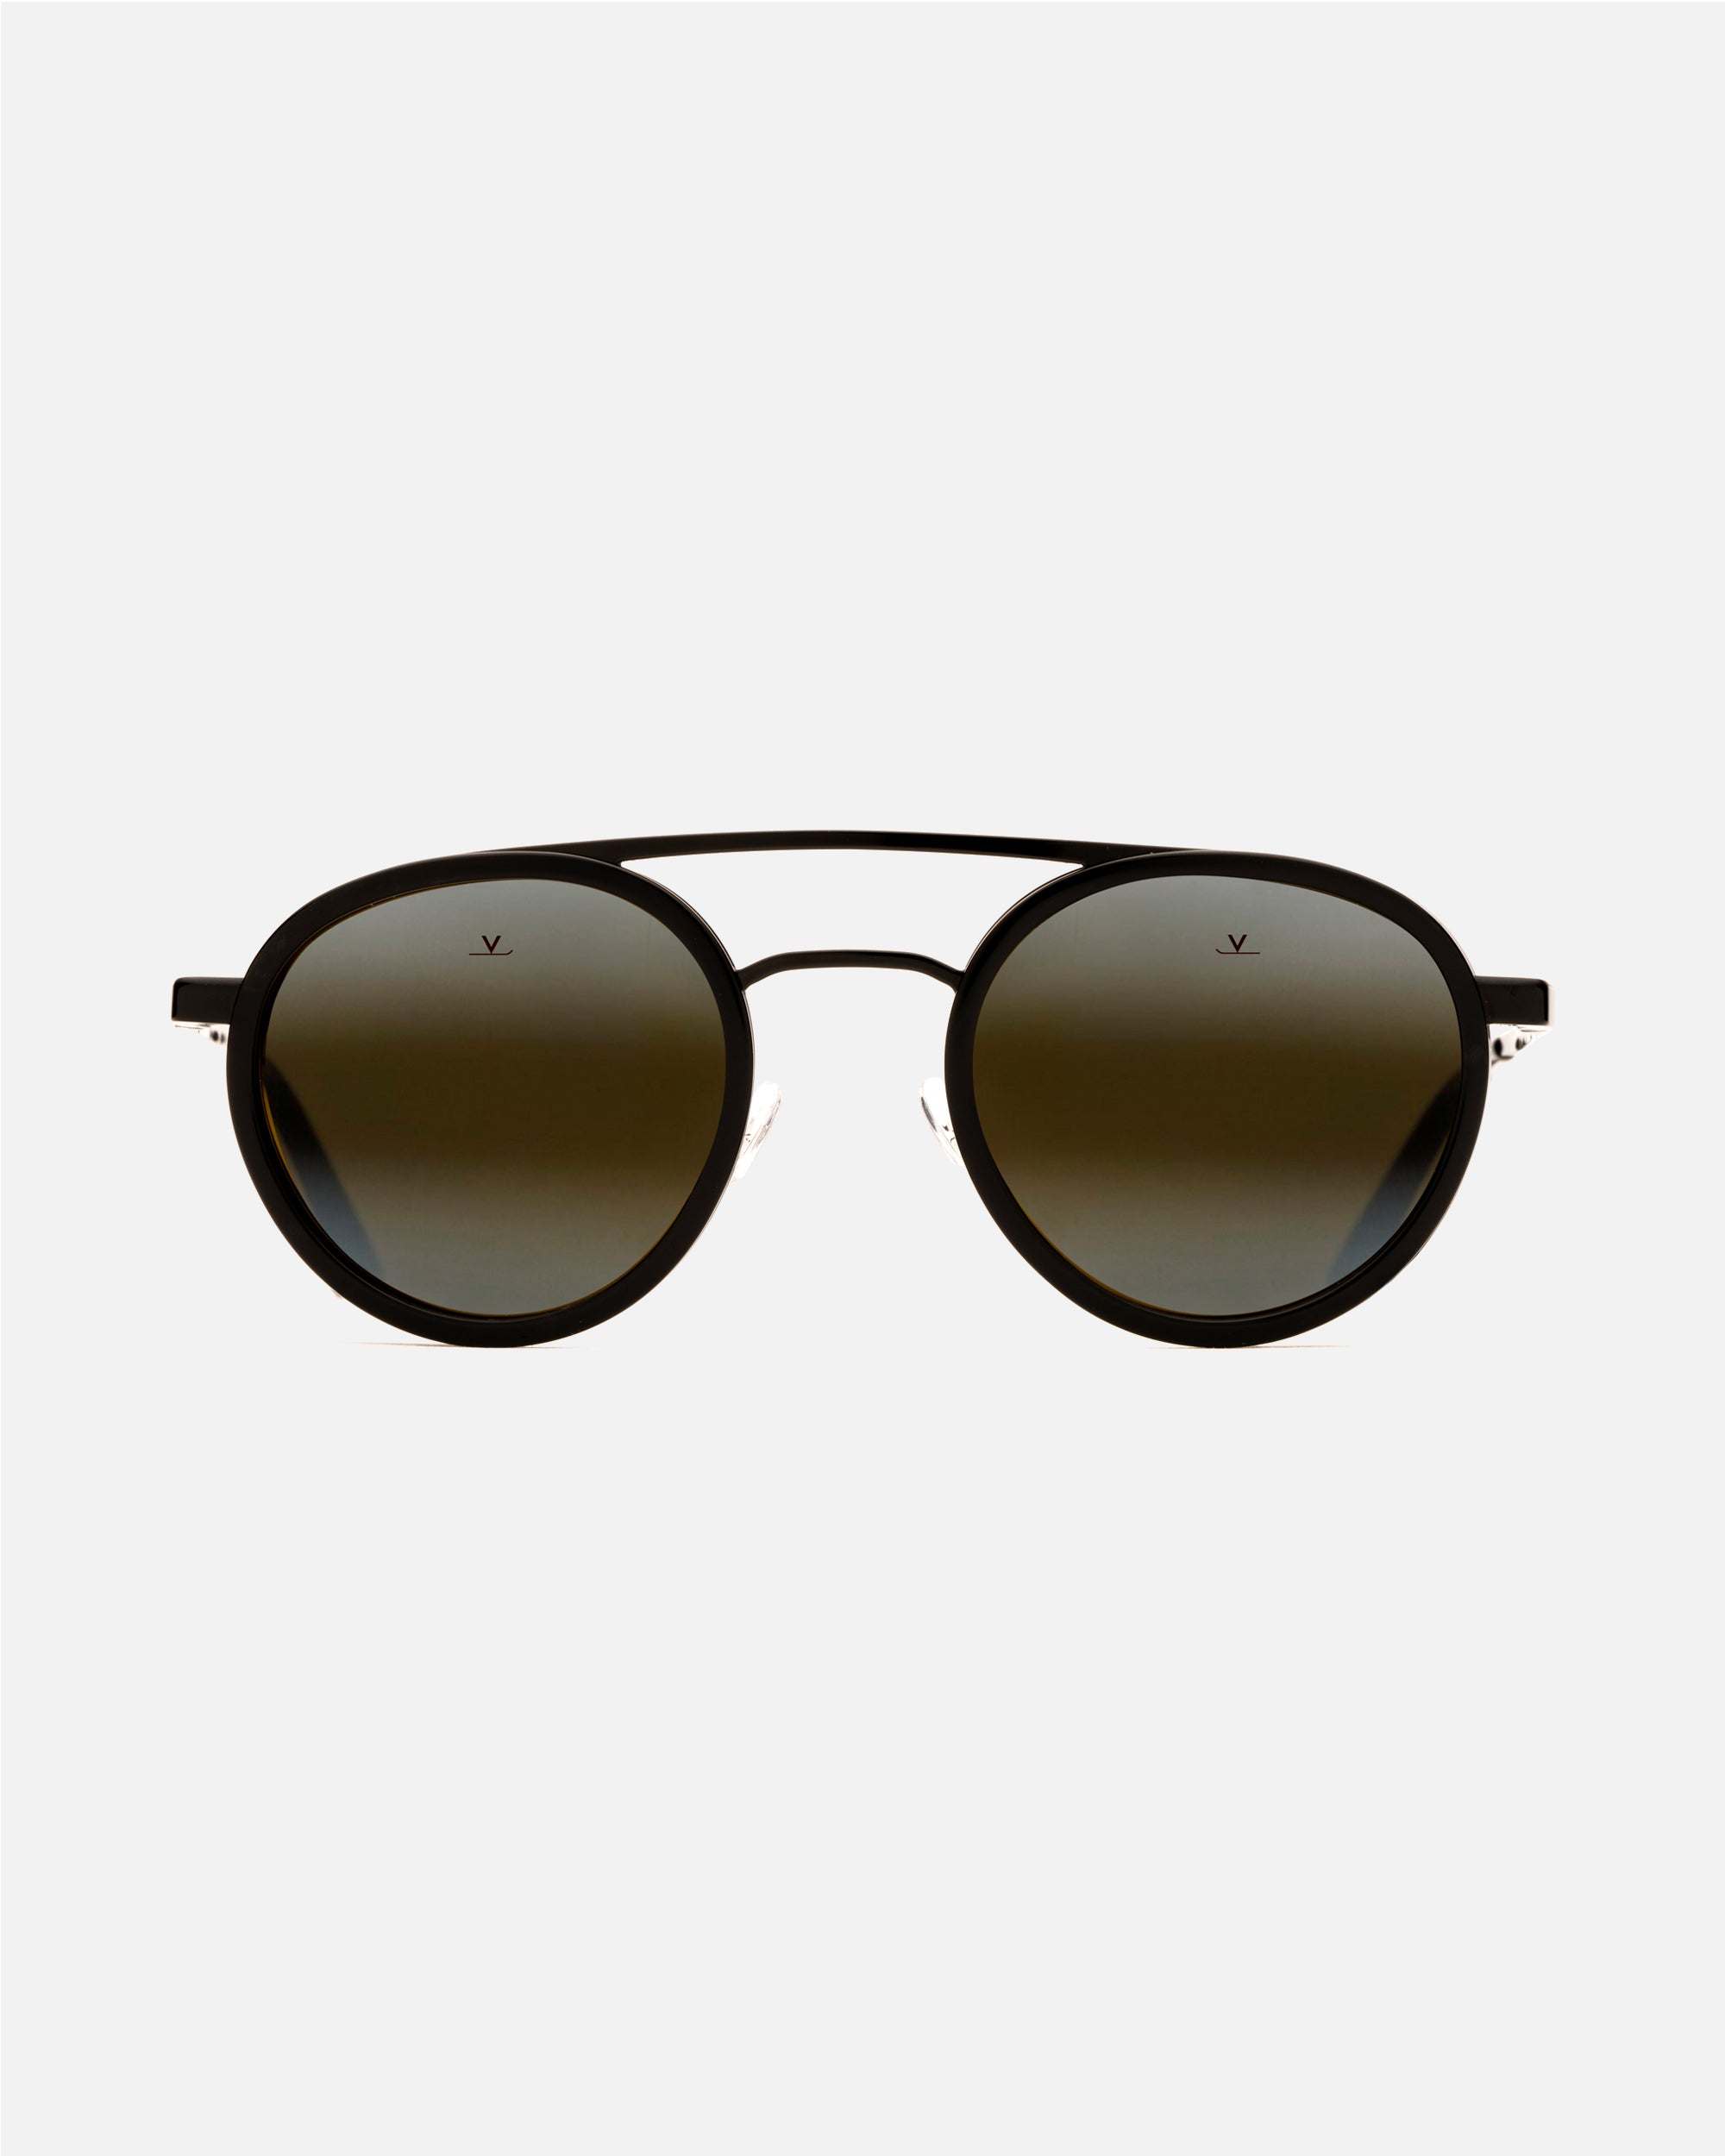 Ozzy Osbourne Sunglasses